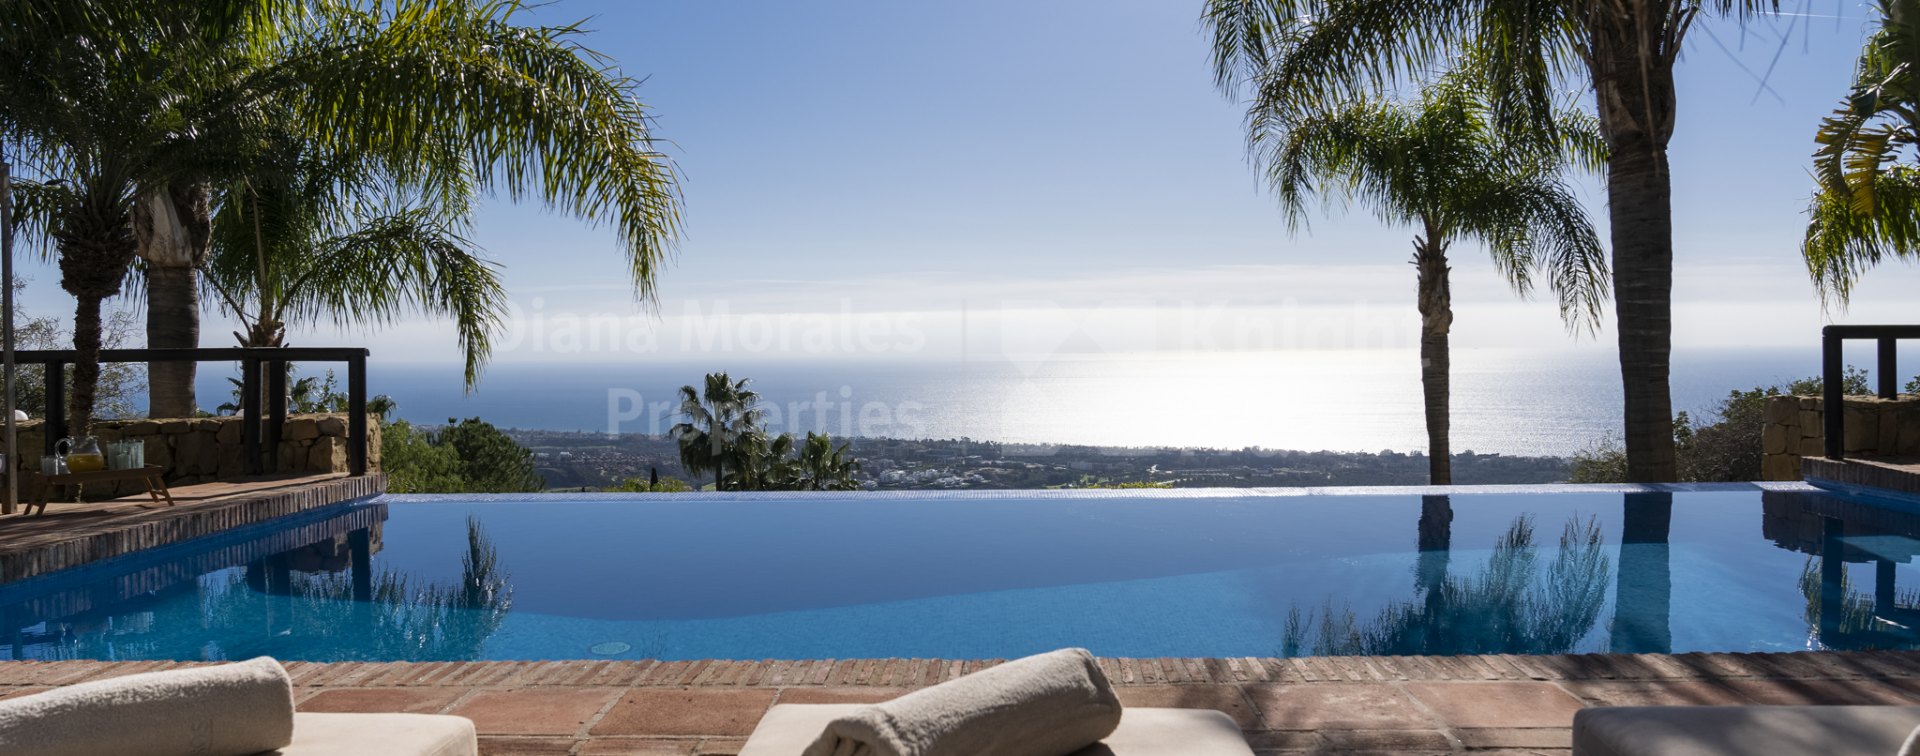 Los Altos de los Monteros, Six-bedroom south facing villa with breathtaking views